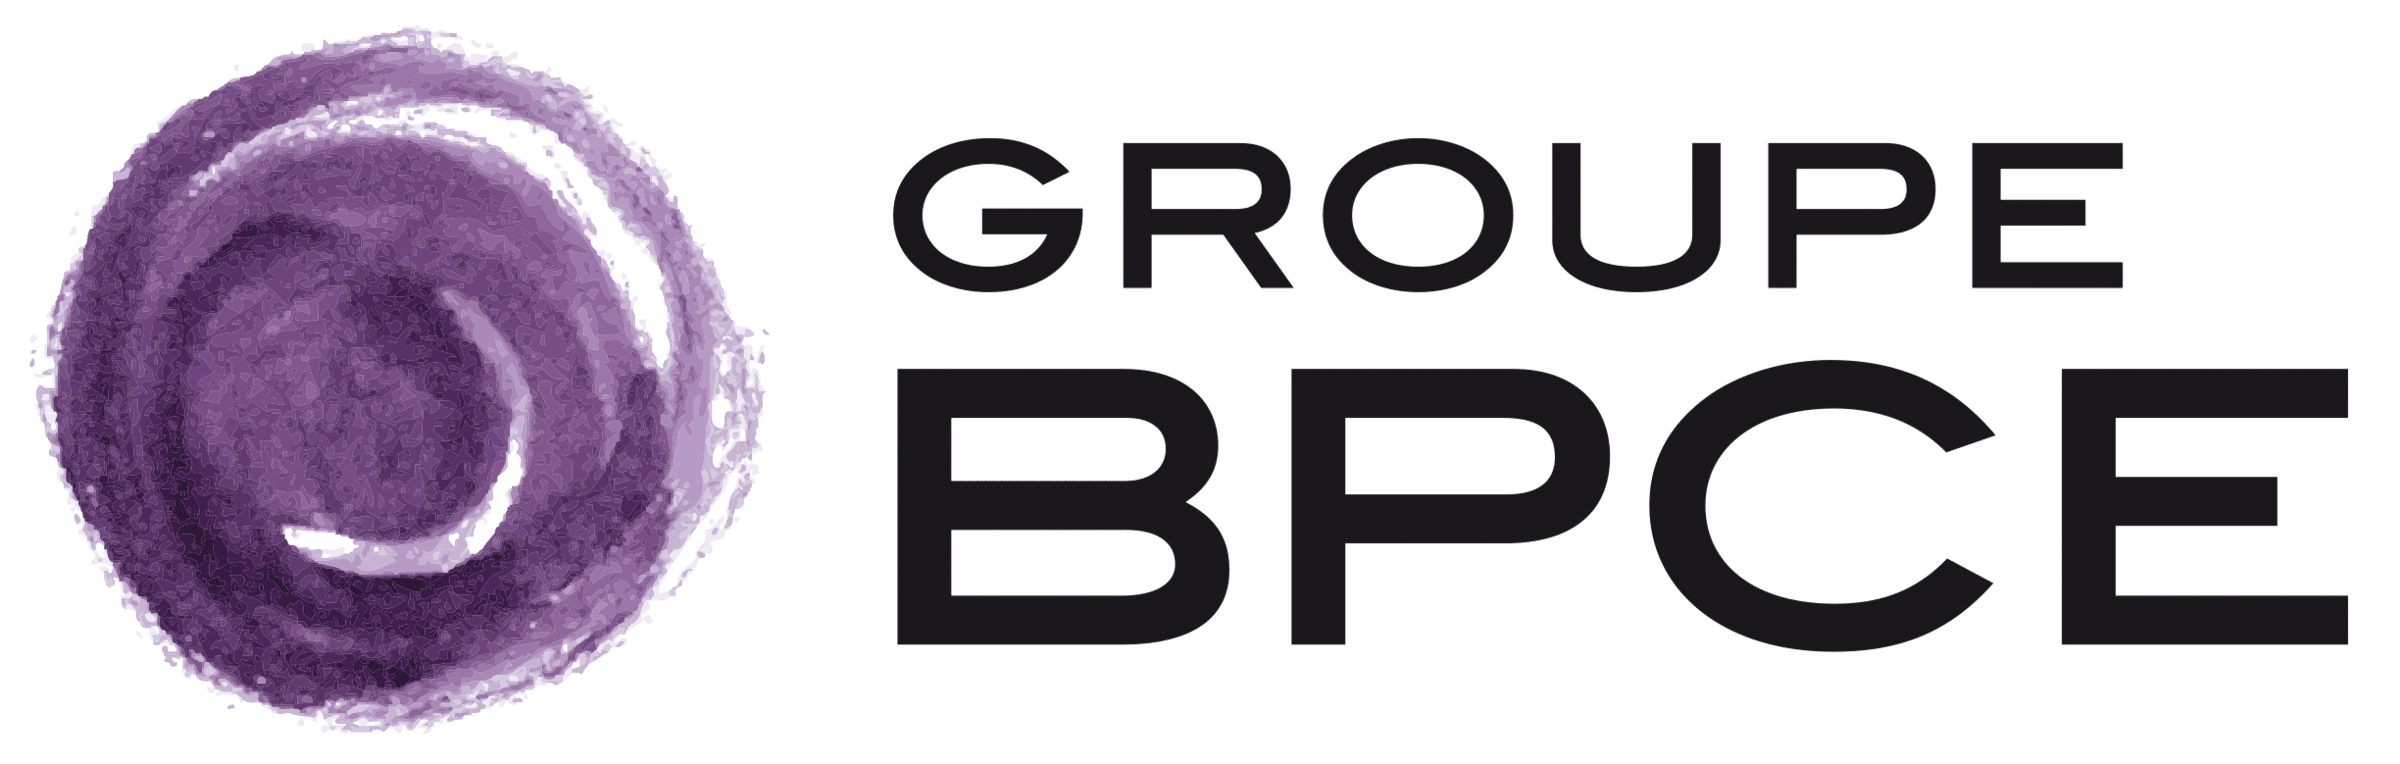 Logotipo do Groupe BPCE